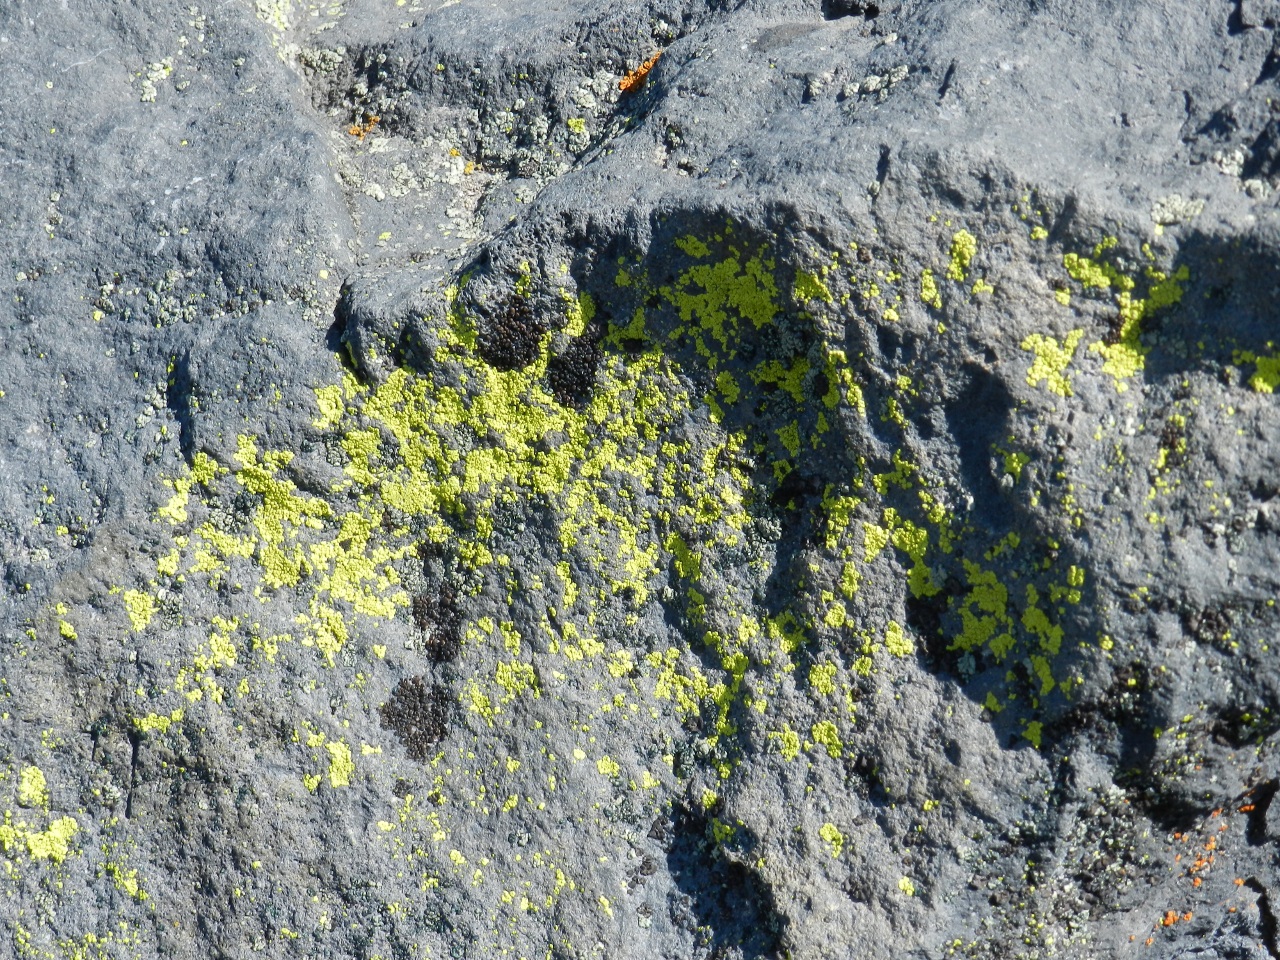 and lichen